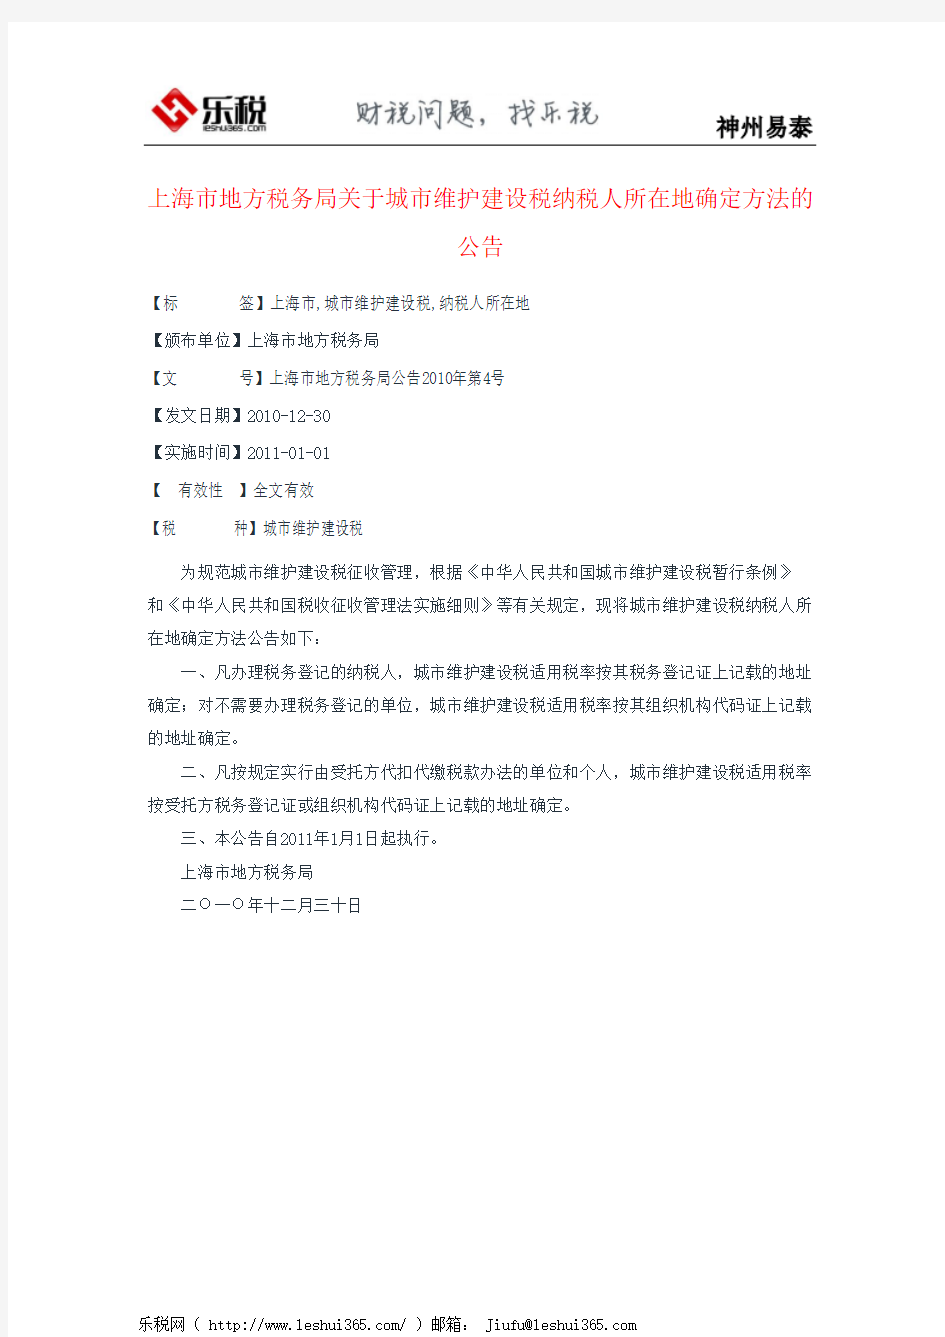 上海市地方税务局关于城市维护建设税纳税人所在地确定方法的公告